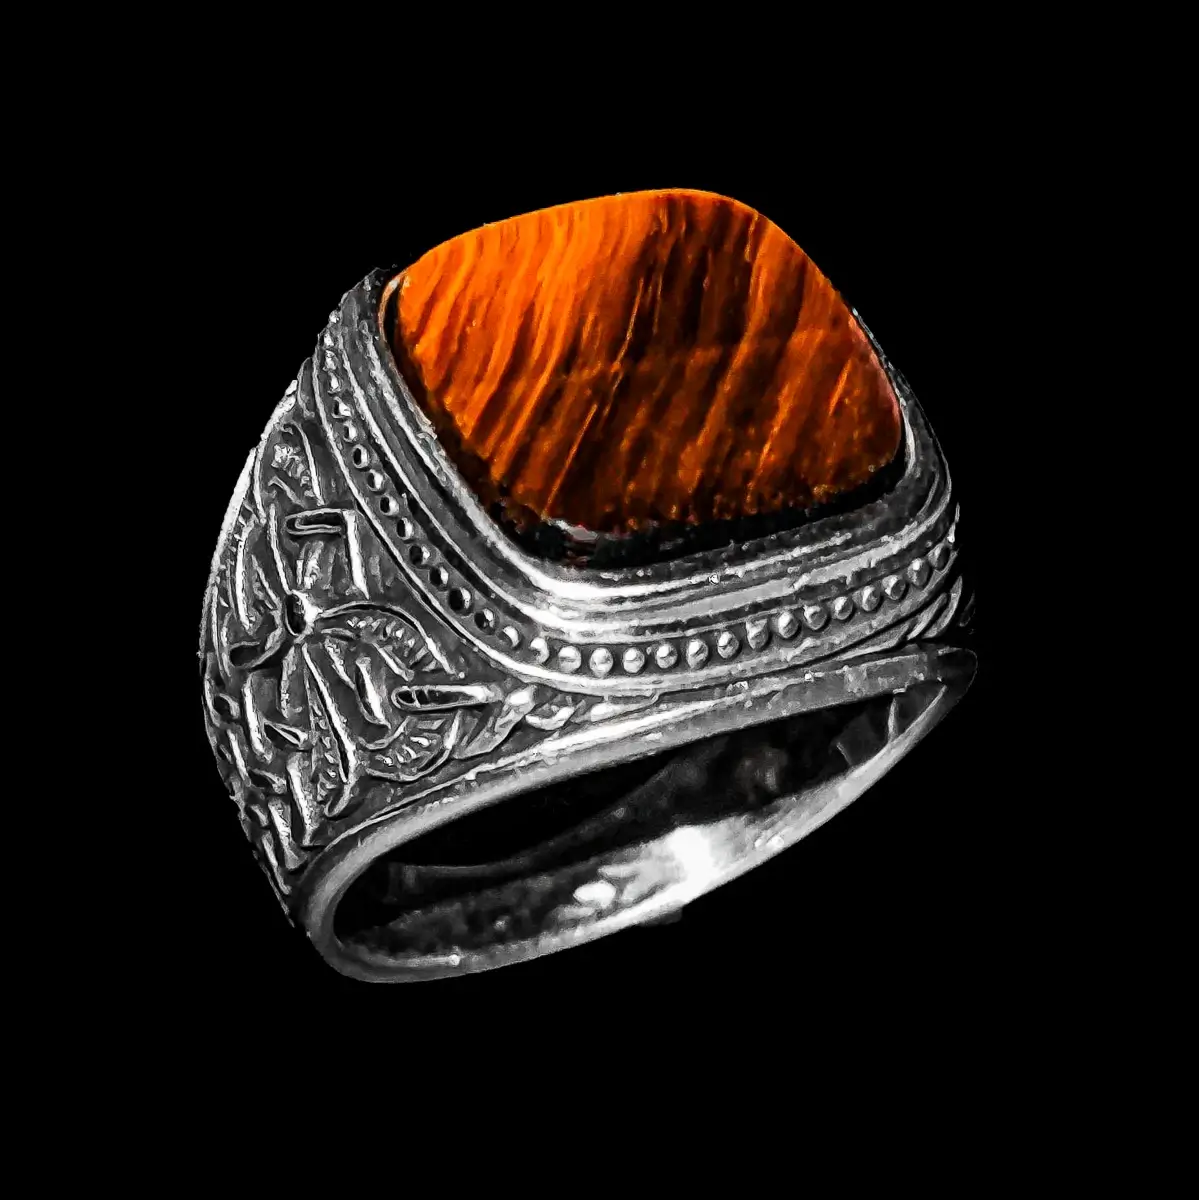 Izrađen sa izvanrednom pažnjom, ovaj srebrni muški prsten odiše elegancijom i sofisticiranošću. Sa svojim prefinjenim dizajnom, ovaj prsten ima simbol isprepletanog veza na strani, predstavljajući snagu i dubinu povezanosti. U središtu prstena nalazi se četvrtasti kamen tigrovo oko, koji pruža suptilnu toplinu i privlačnost. Jedinstvena kombinacija simbola i Tigrovog oka čini prsten savršenim izborom za elegantne i stilski osvešćene muškarce.